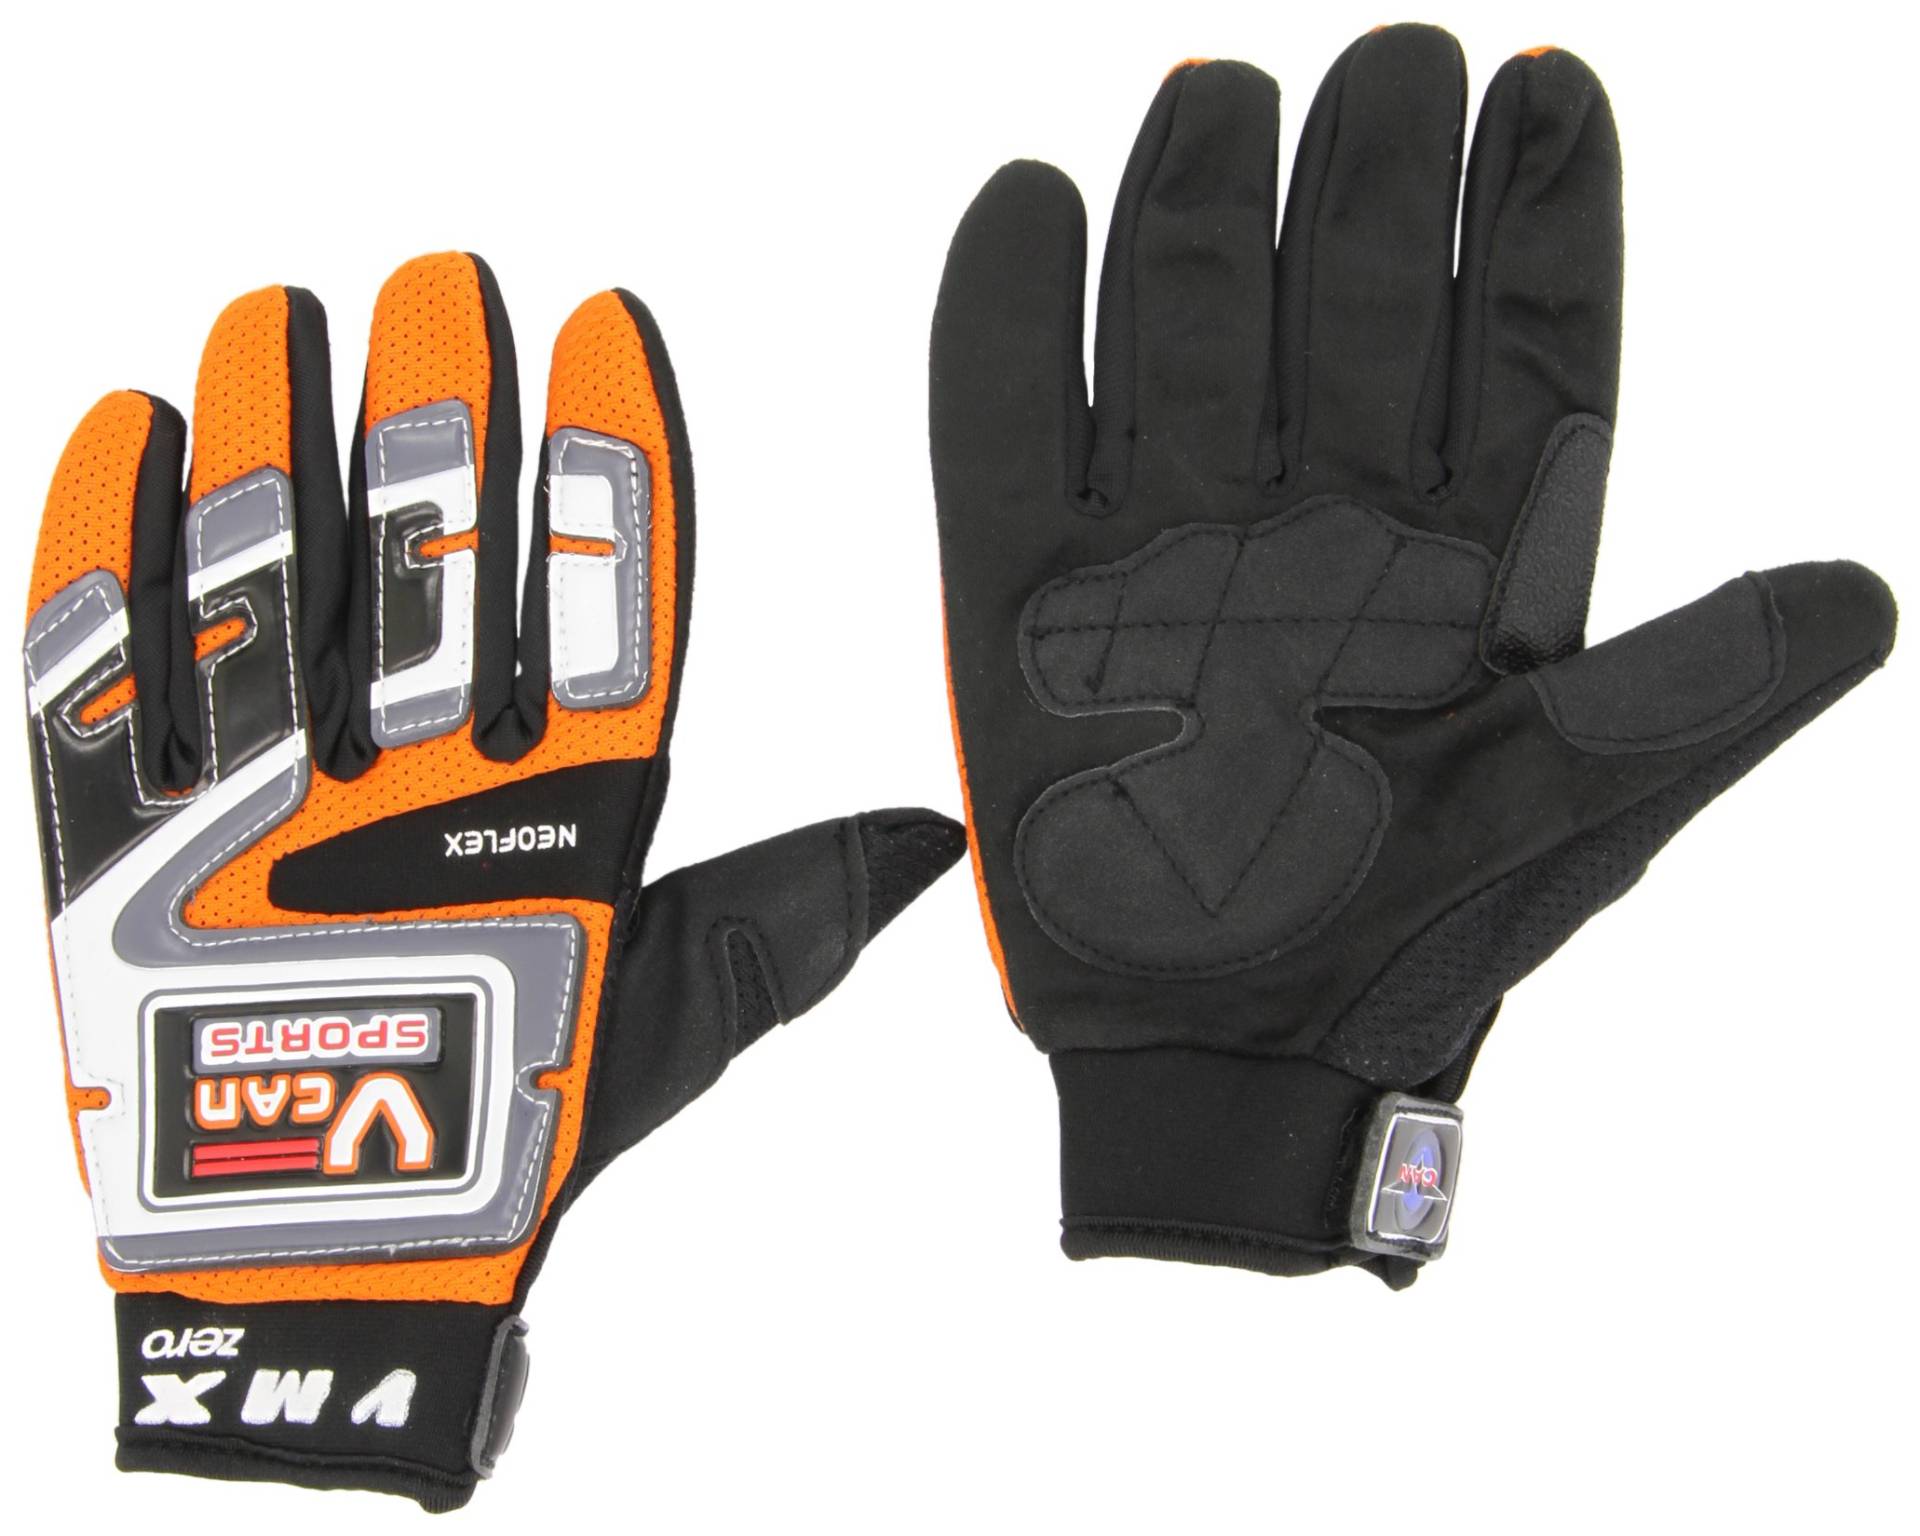 Protectwear MX01-OR-XXL Crosshandschuhe, Downhillhandschuhe, BMX-Handschuhe aus Reißfestem Textil mit Kunstoffaufsätzen, Größe XXL, Orange/Schwarz/Weiß von protectWEAR